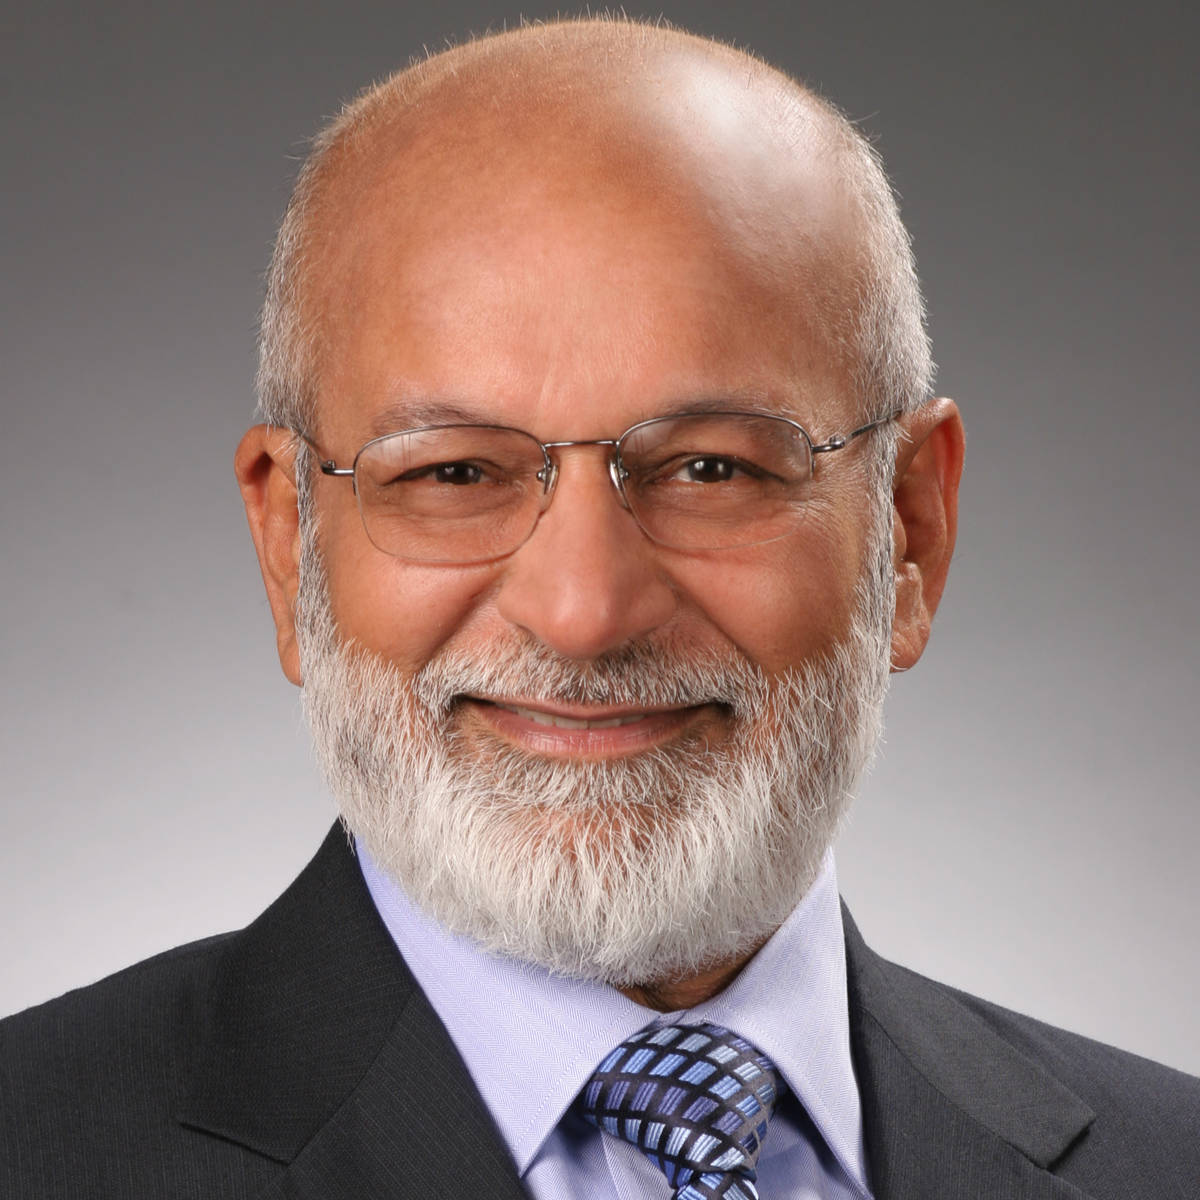 Dr. Shashikant “Shashi” Gupta